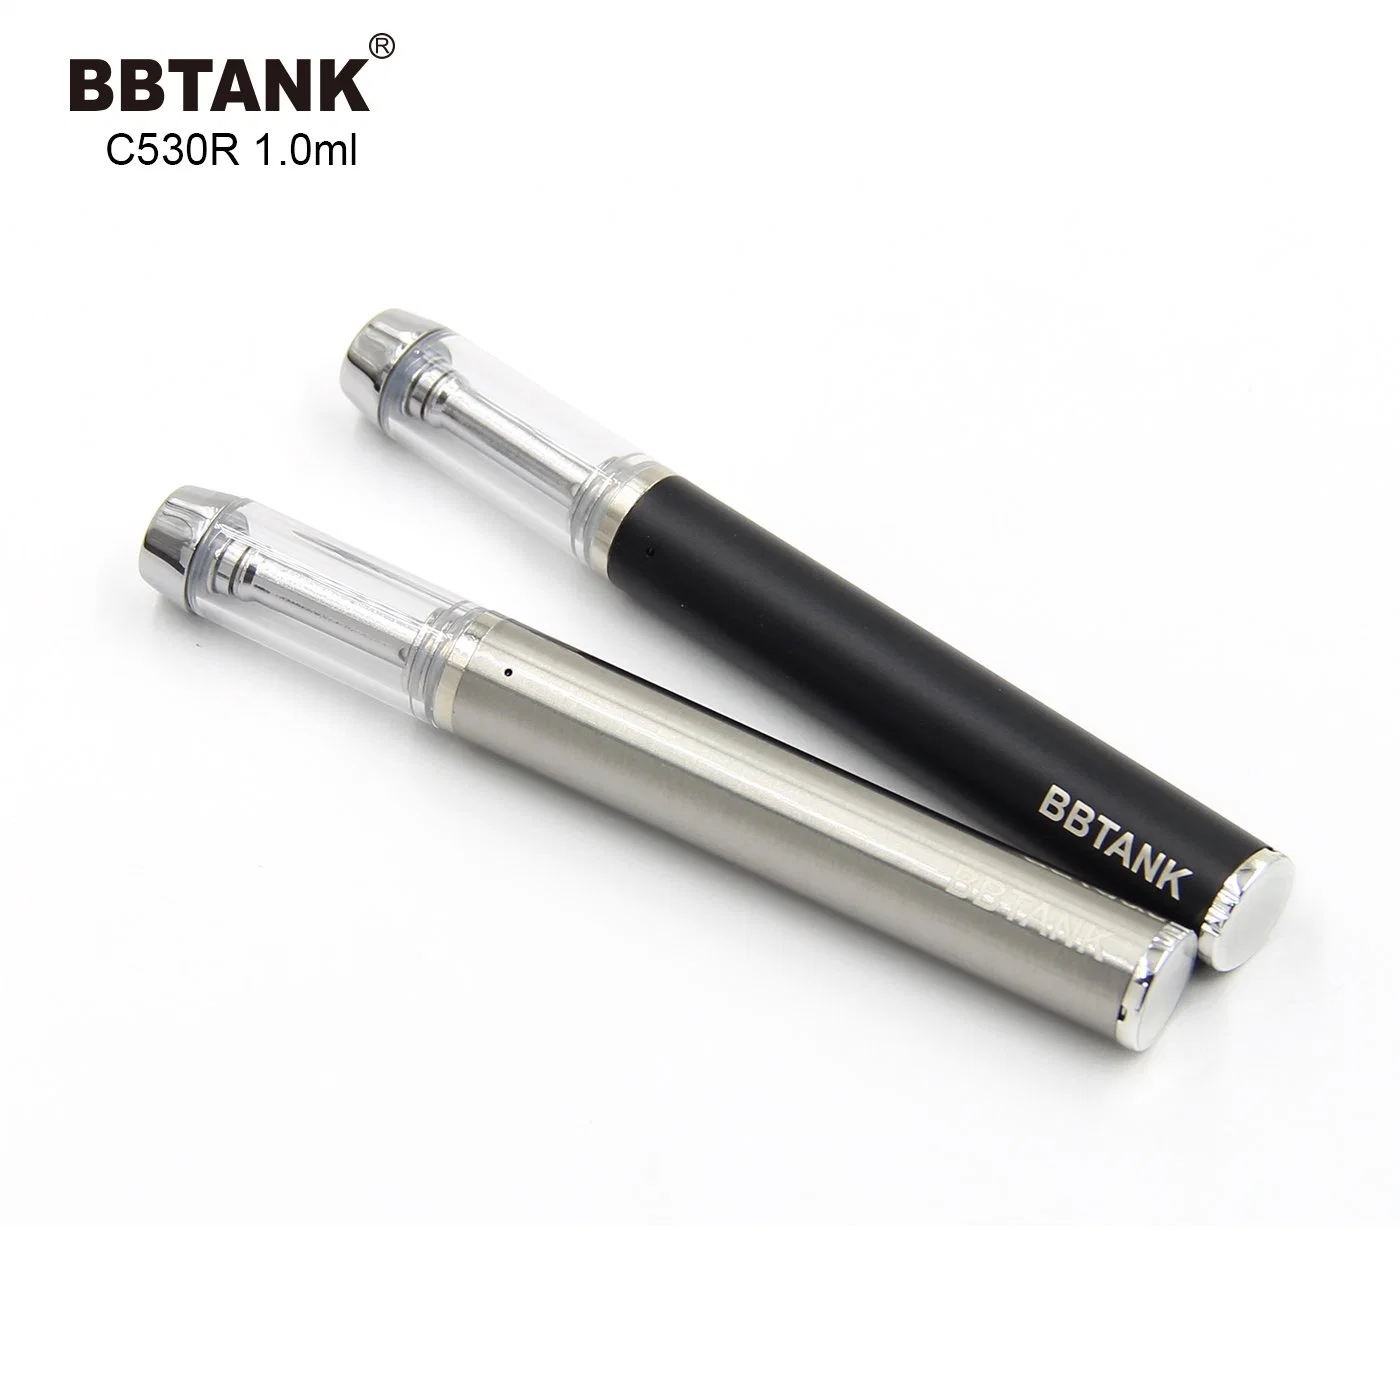 Poderoso 530 mAh recarregáveis Vape descartáveis Bbtank Vape Eletrônico de canetas de feltro